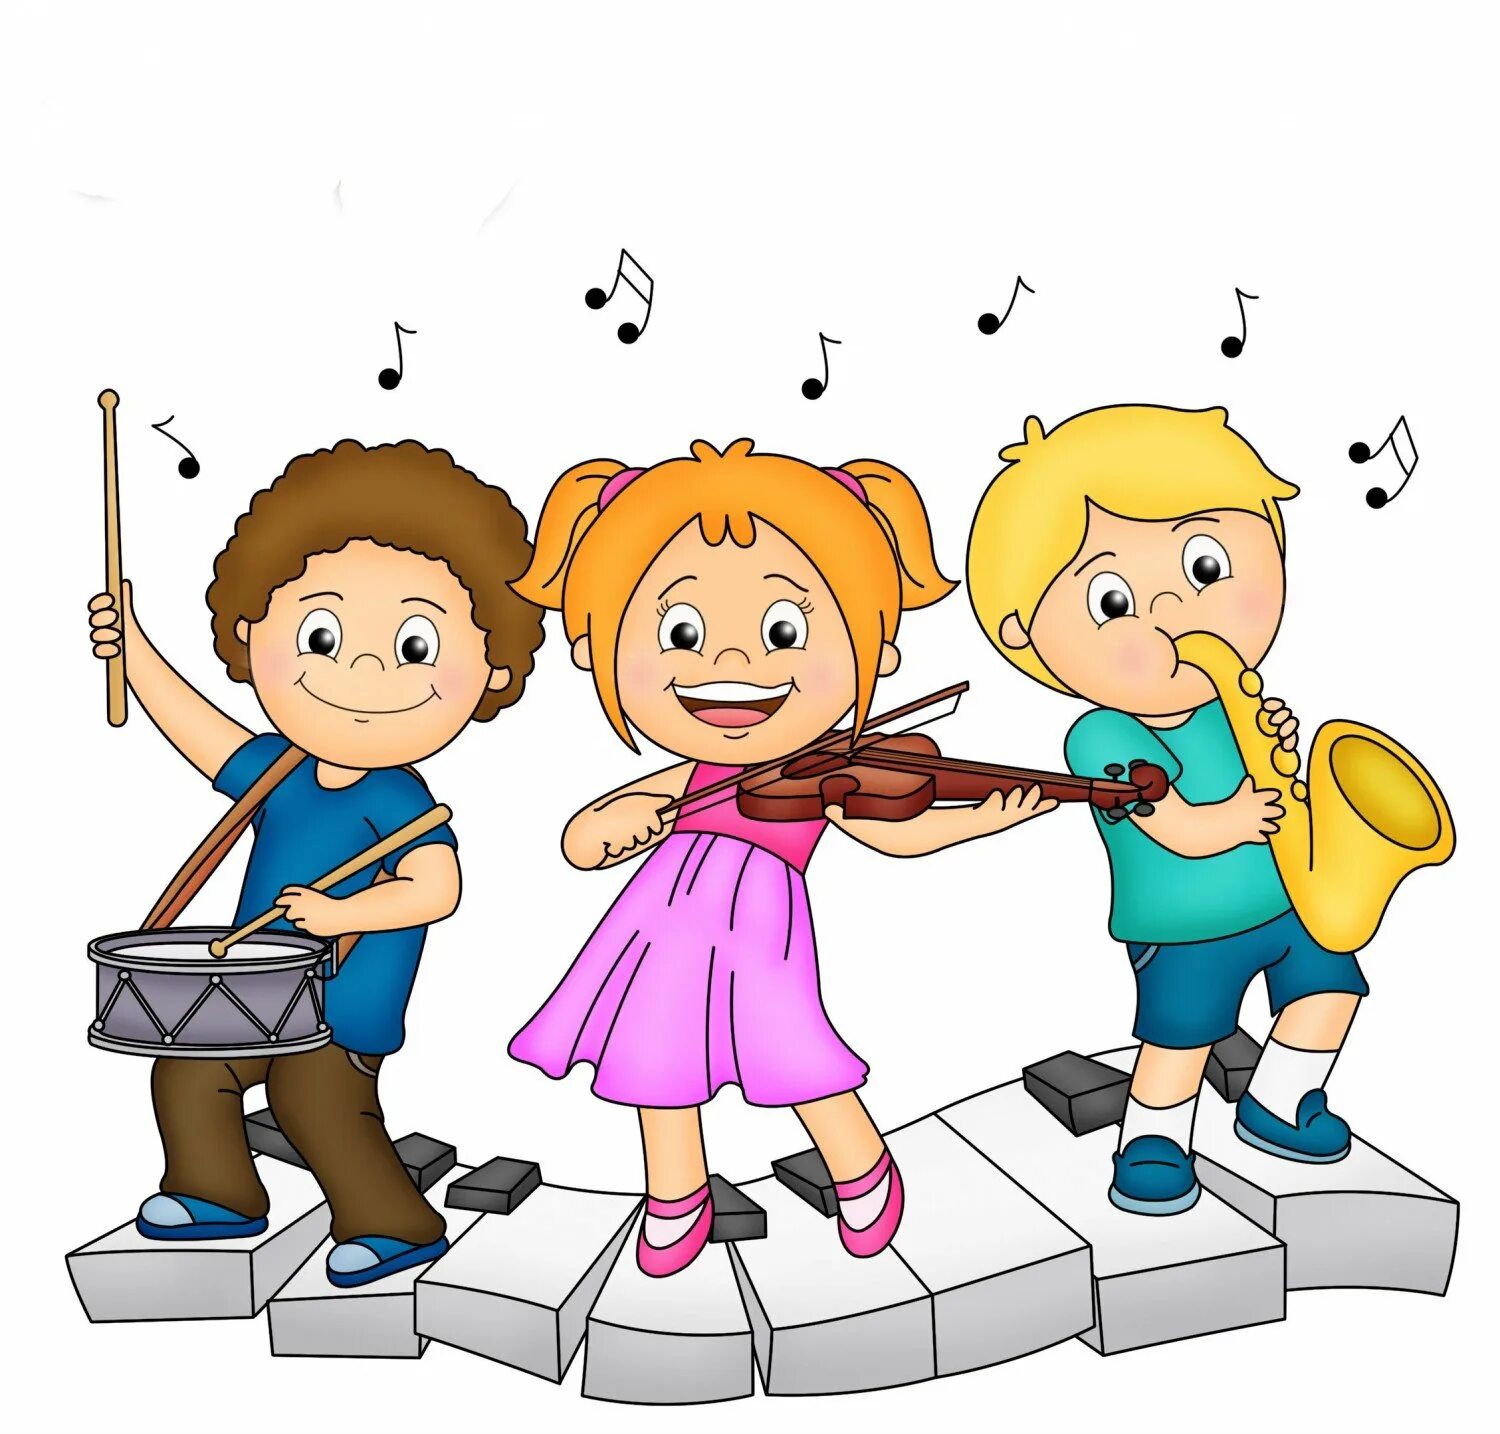 Музыка веселая время. Музыкальные инструменты для детей. Музыкальные картинки для детей. Музыкальные картинки для детского сада. Музыкальный рисунок для детей.